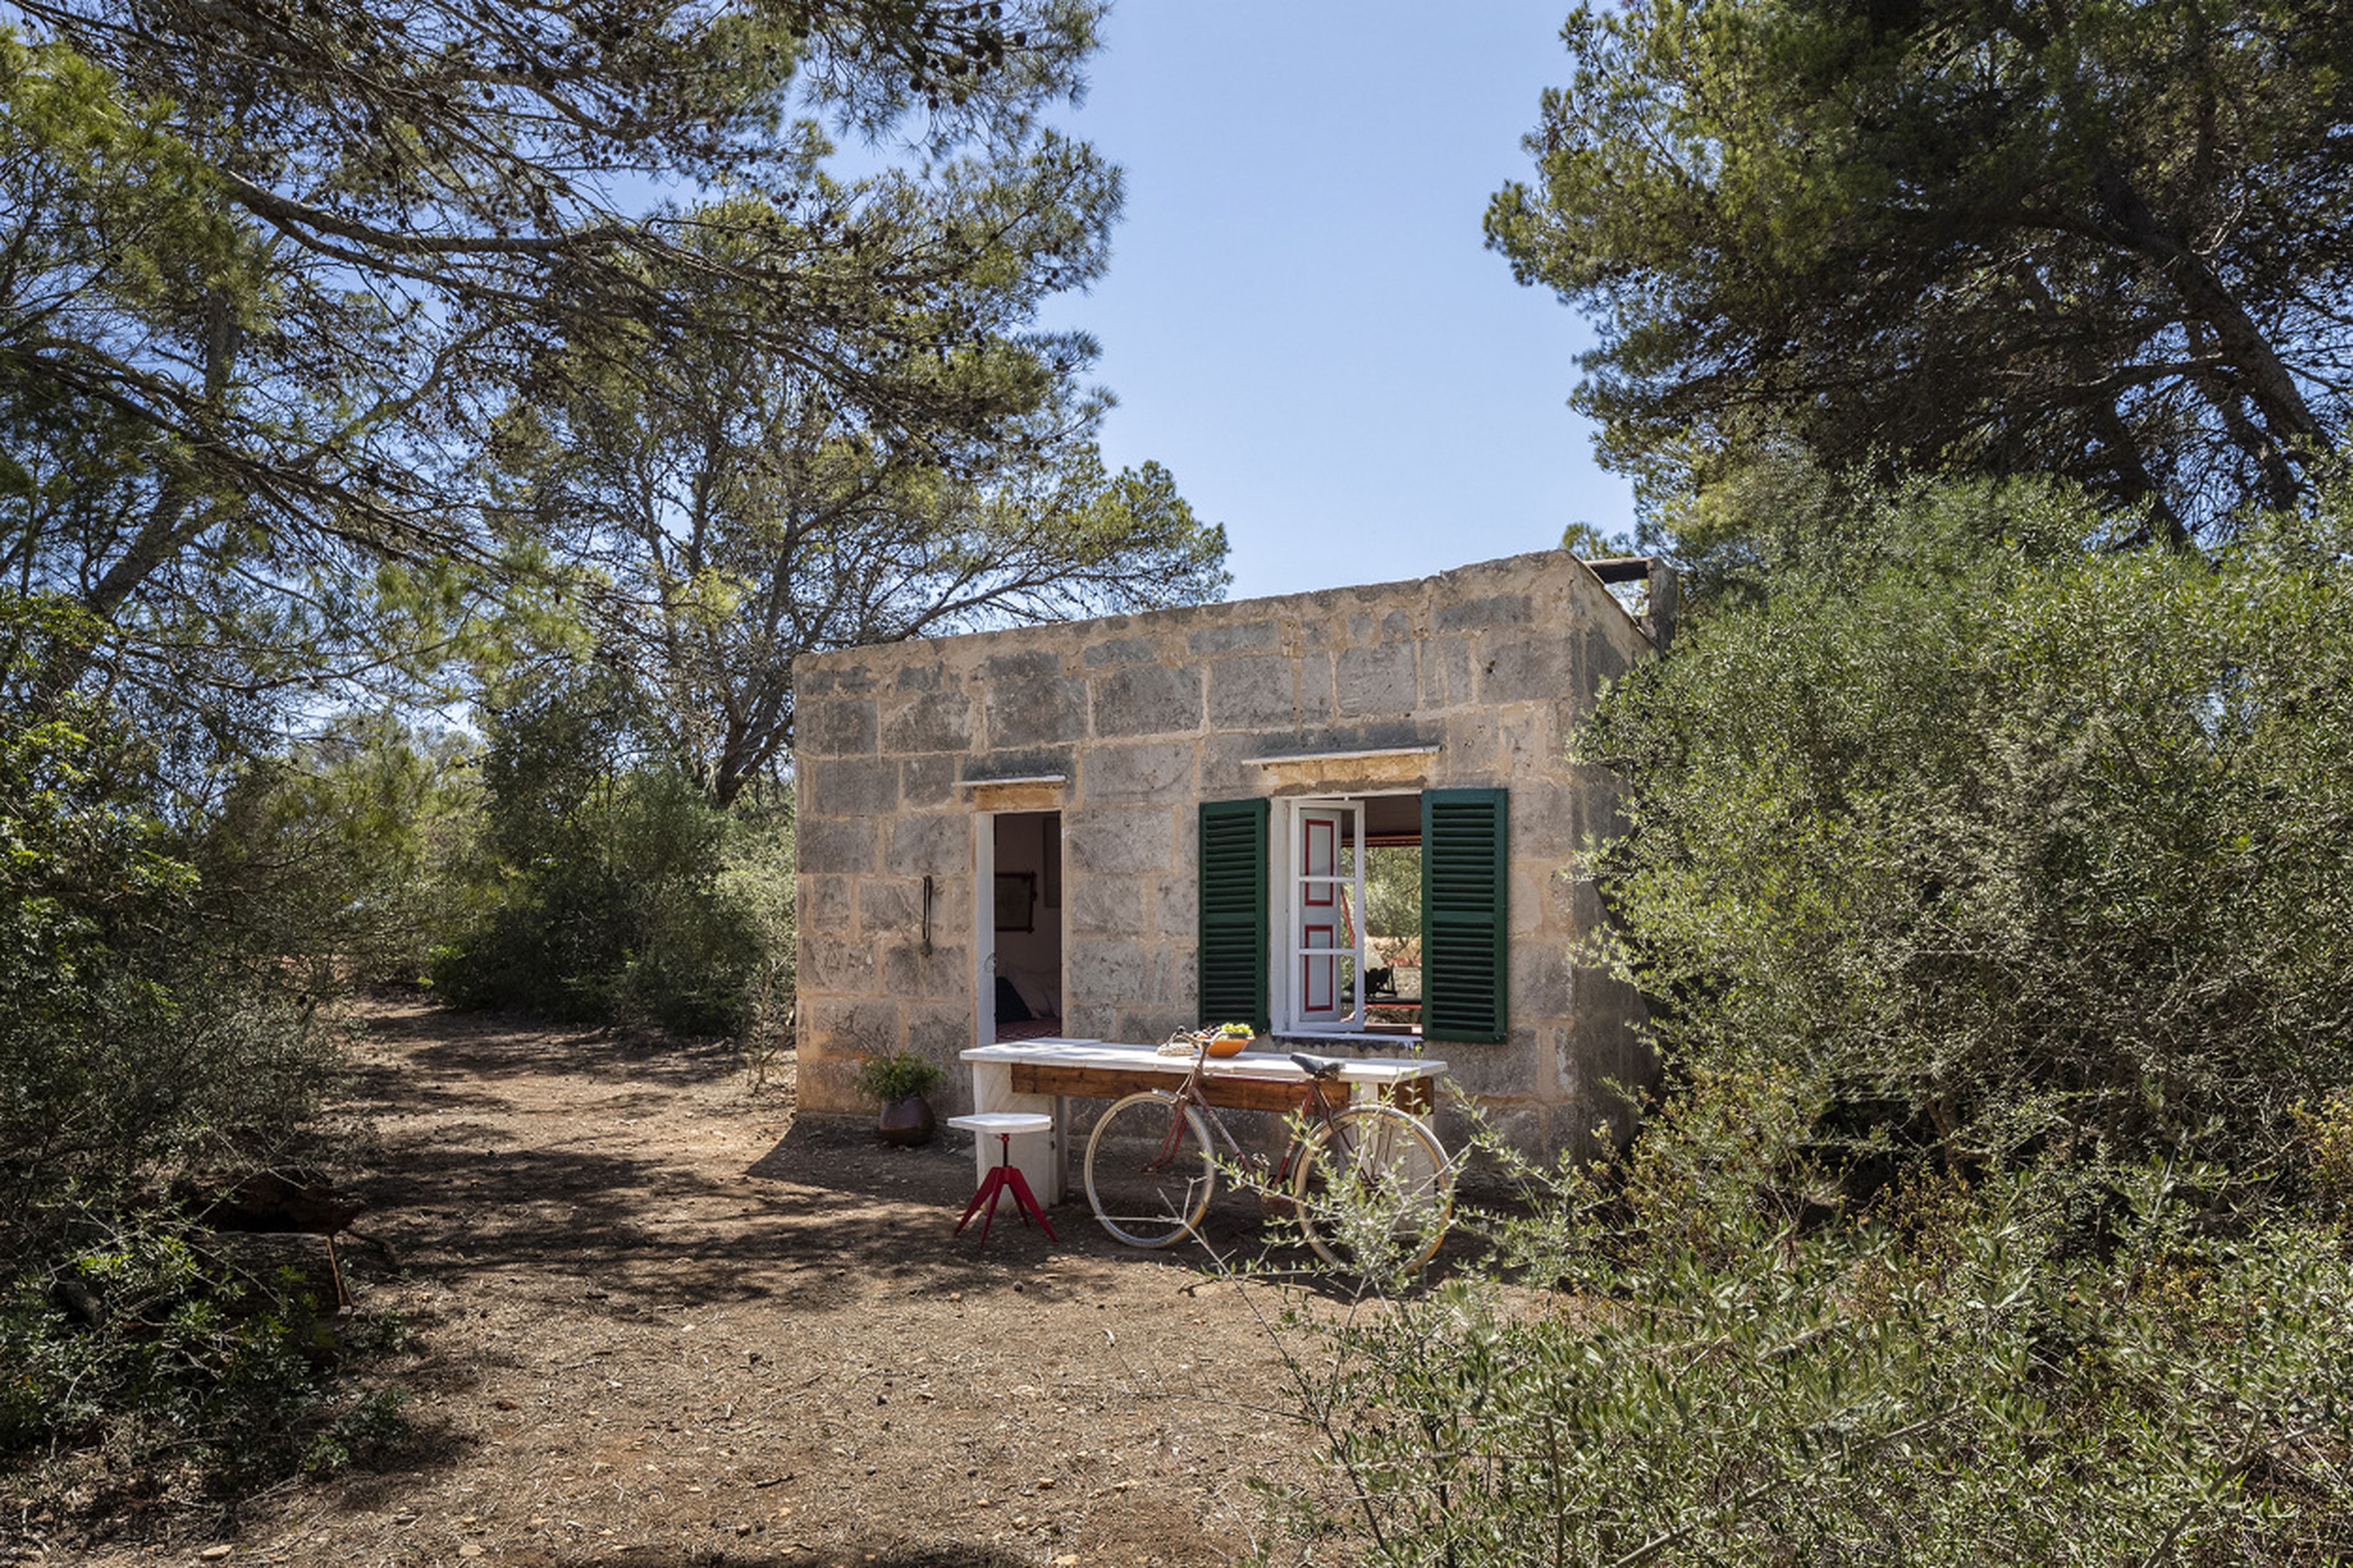 En Mallorca es común la existencia de numerosos cobertizos rurales abandonados, y este ha resucitado para una nueva vida.